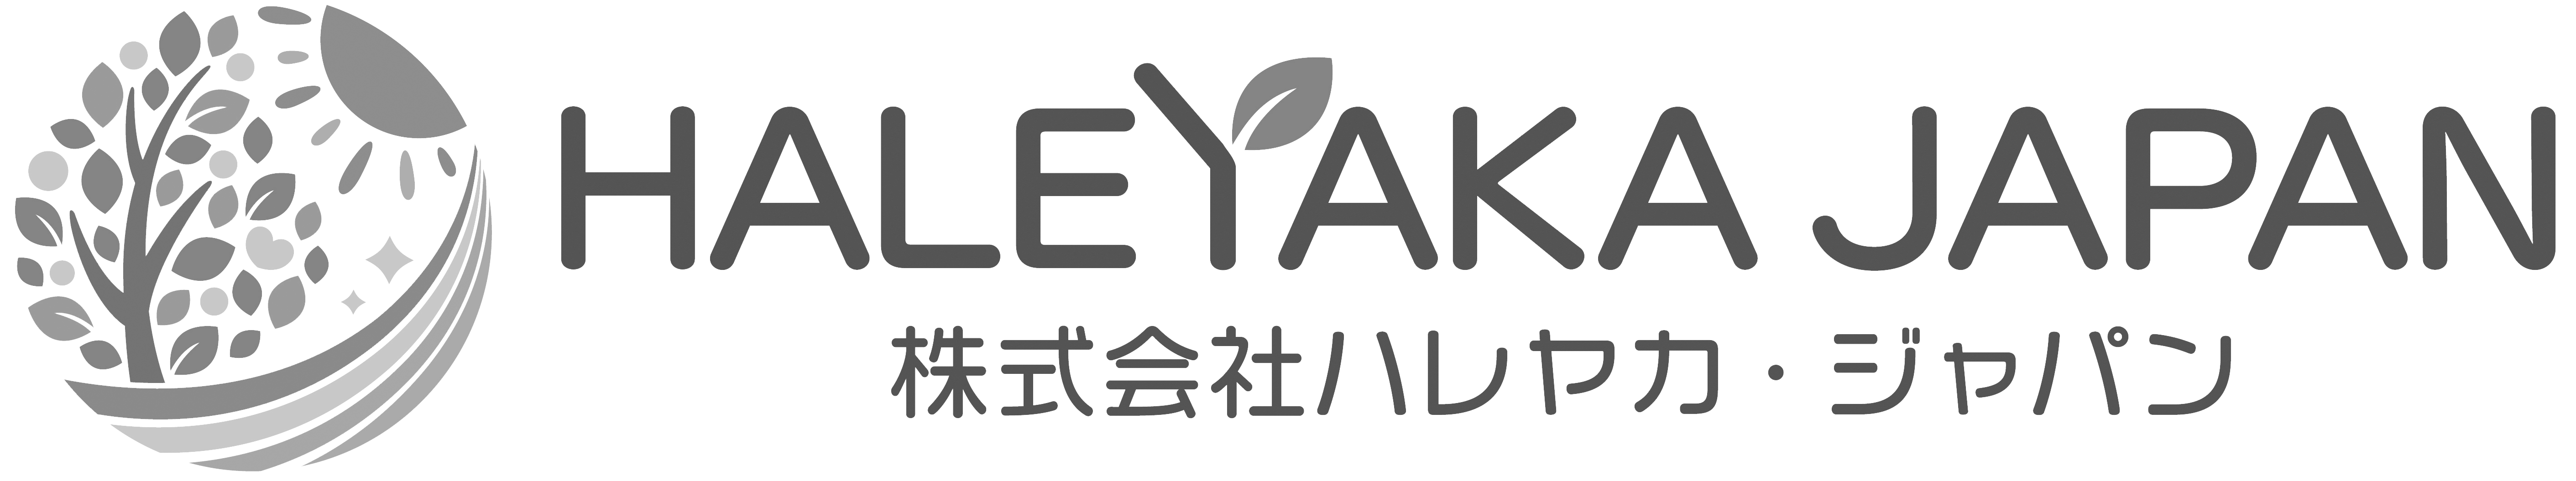 haleyakajapan_logo2